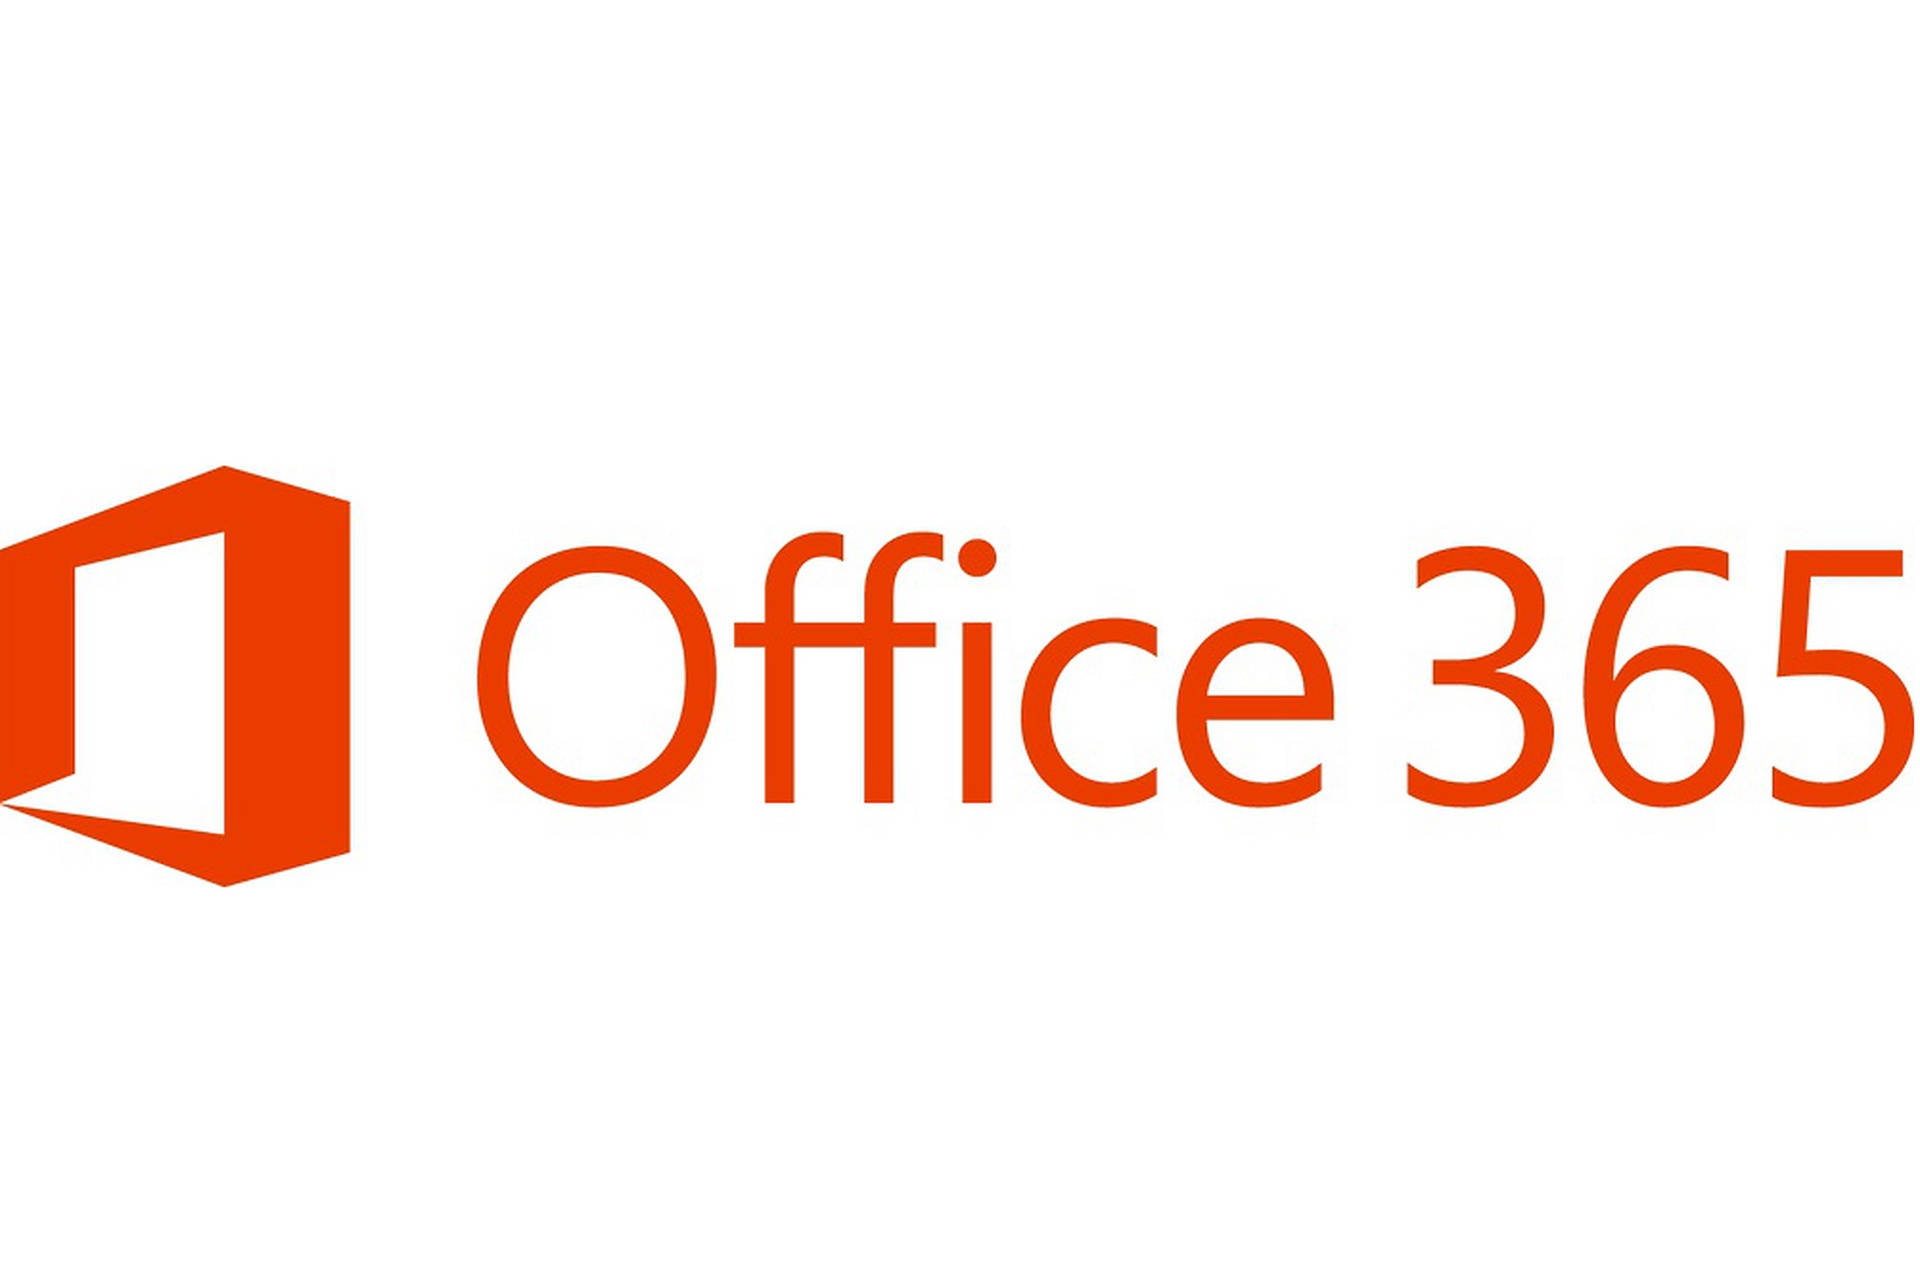 Office 365 Orange Logo Background